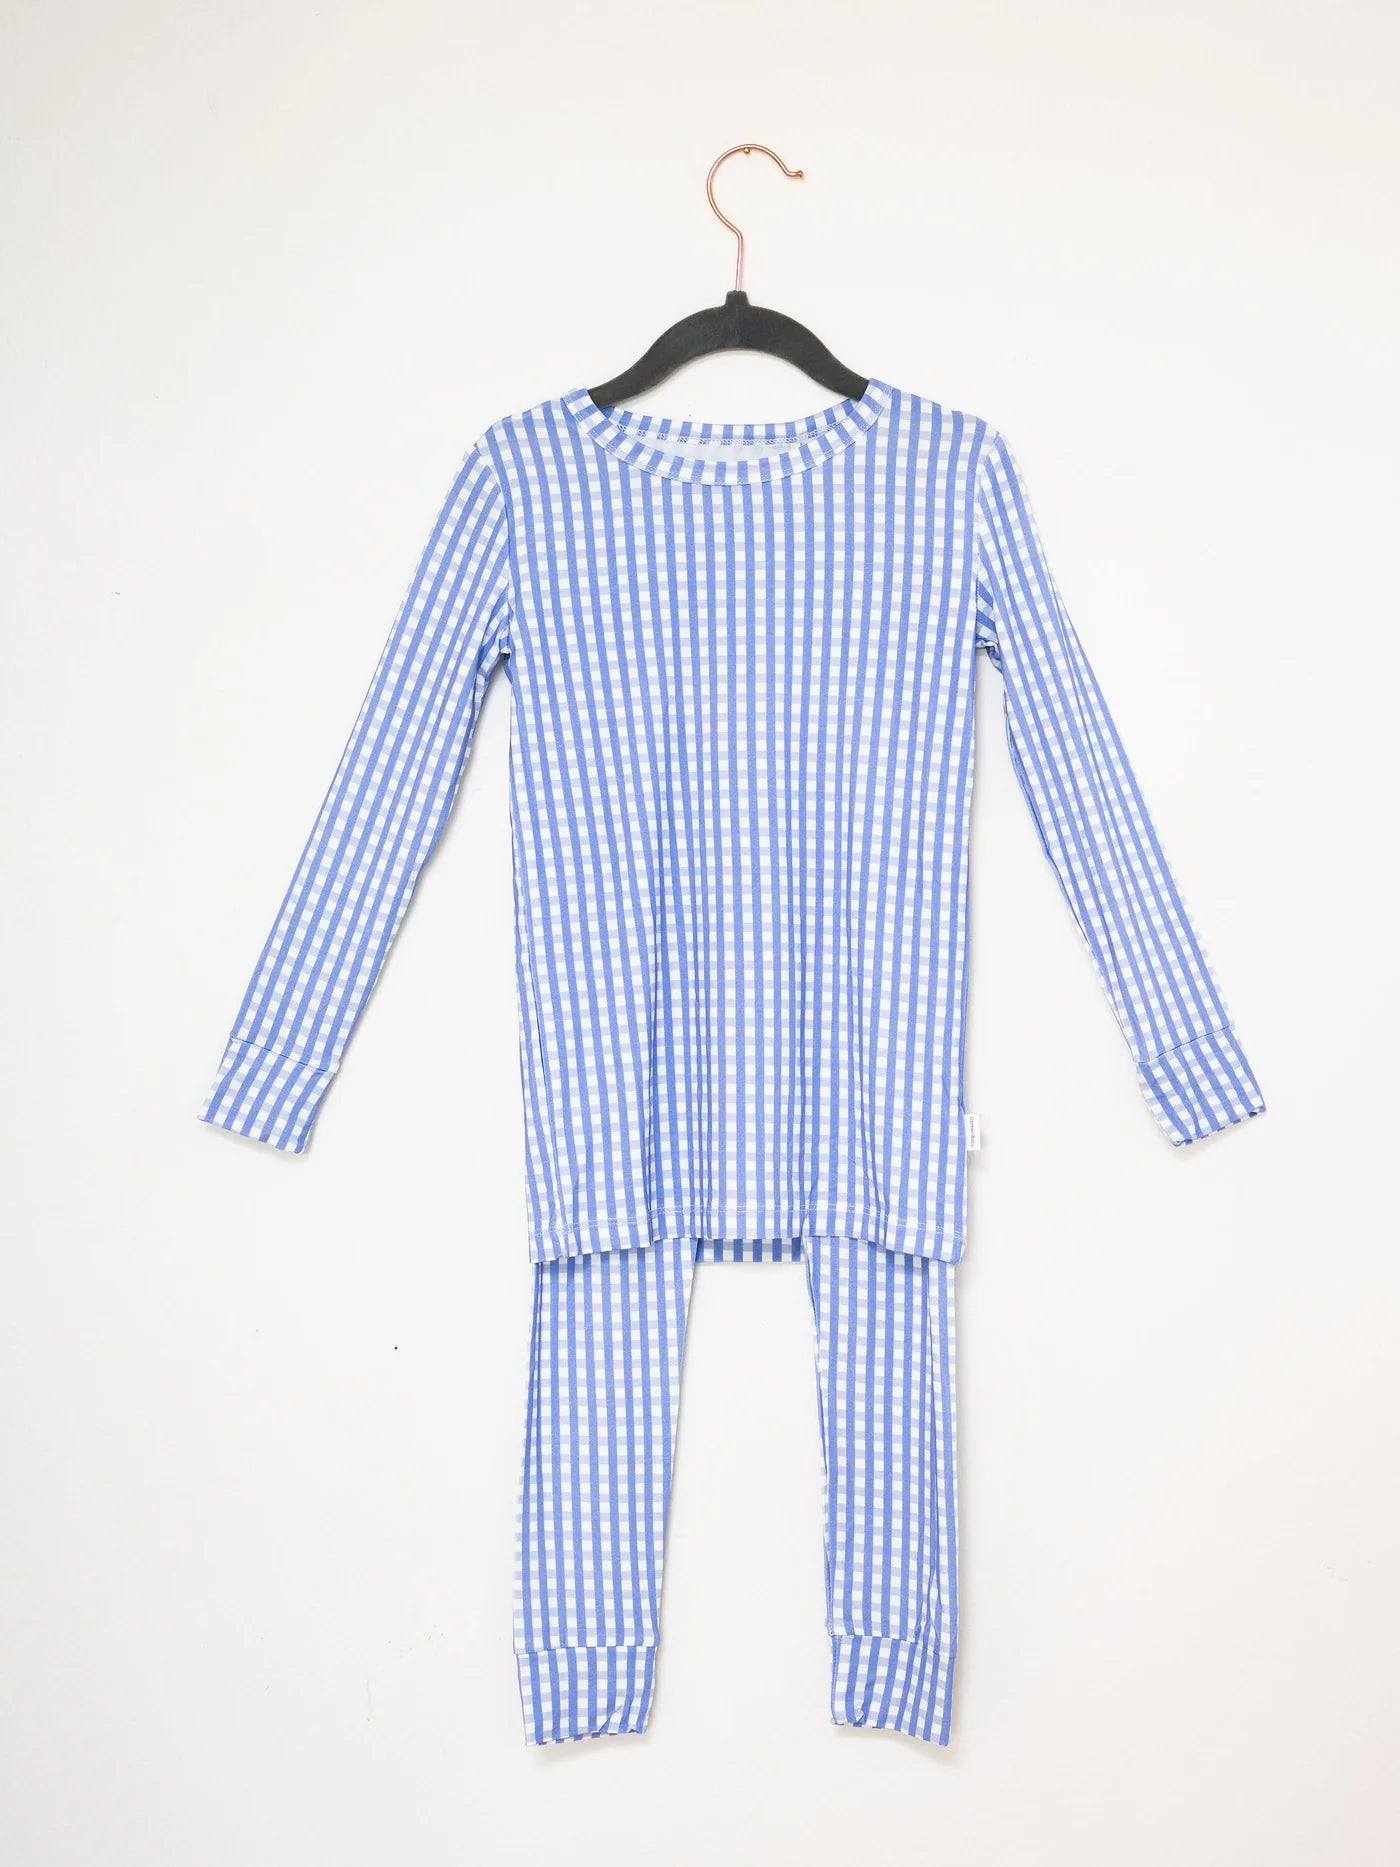 The Uptown Baby 2 Piece Pajama Set